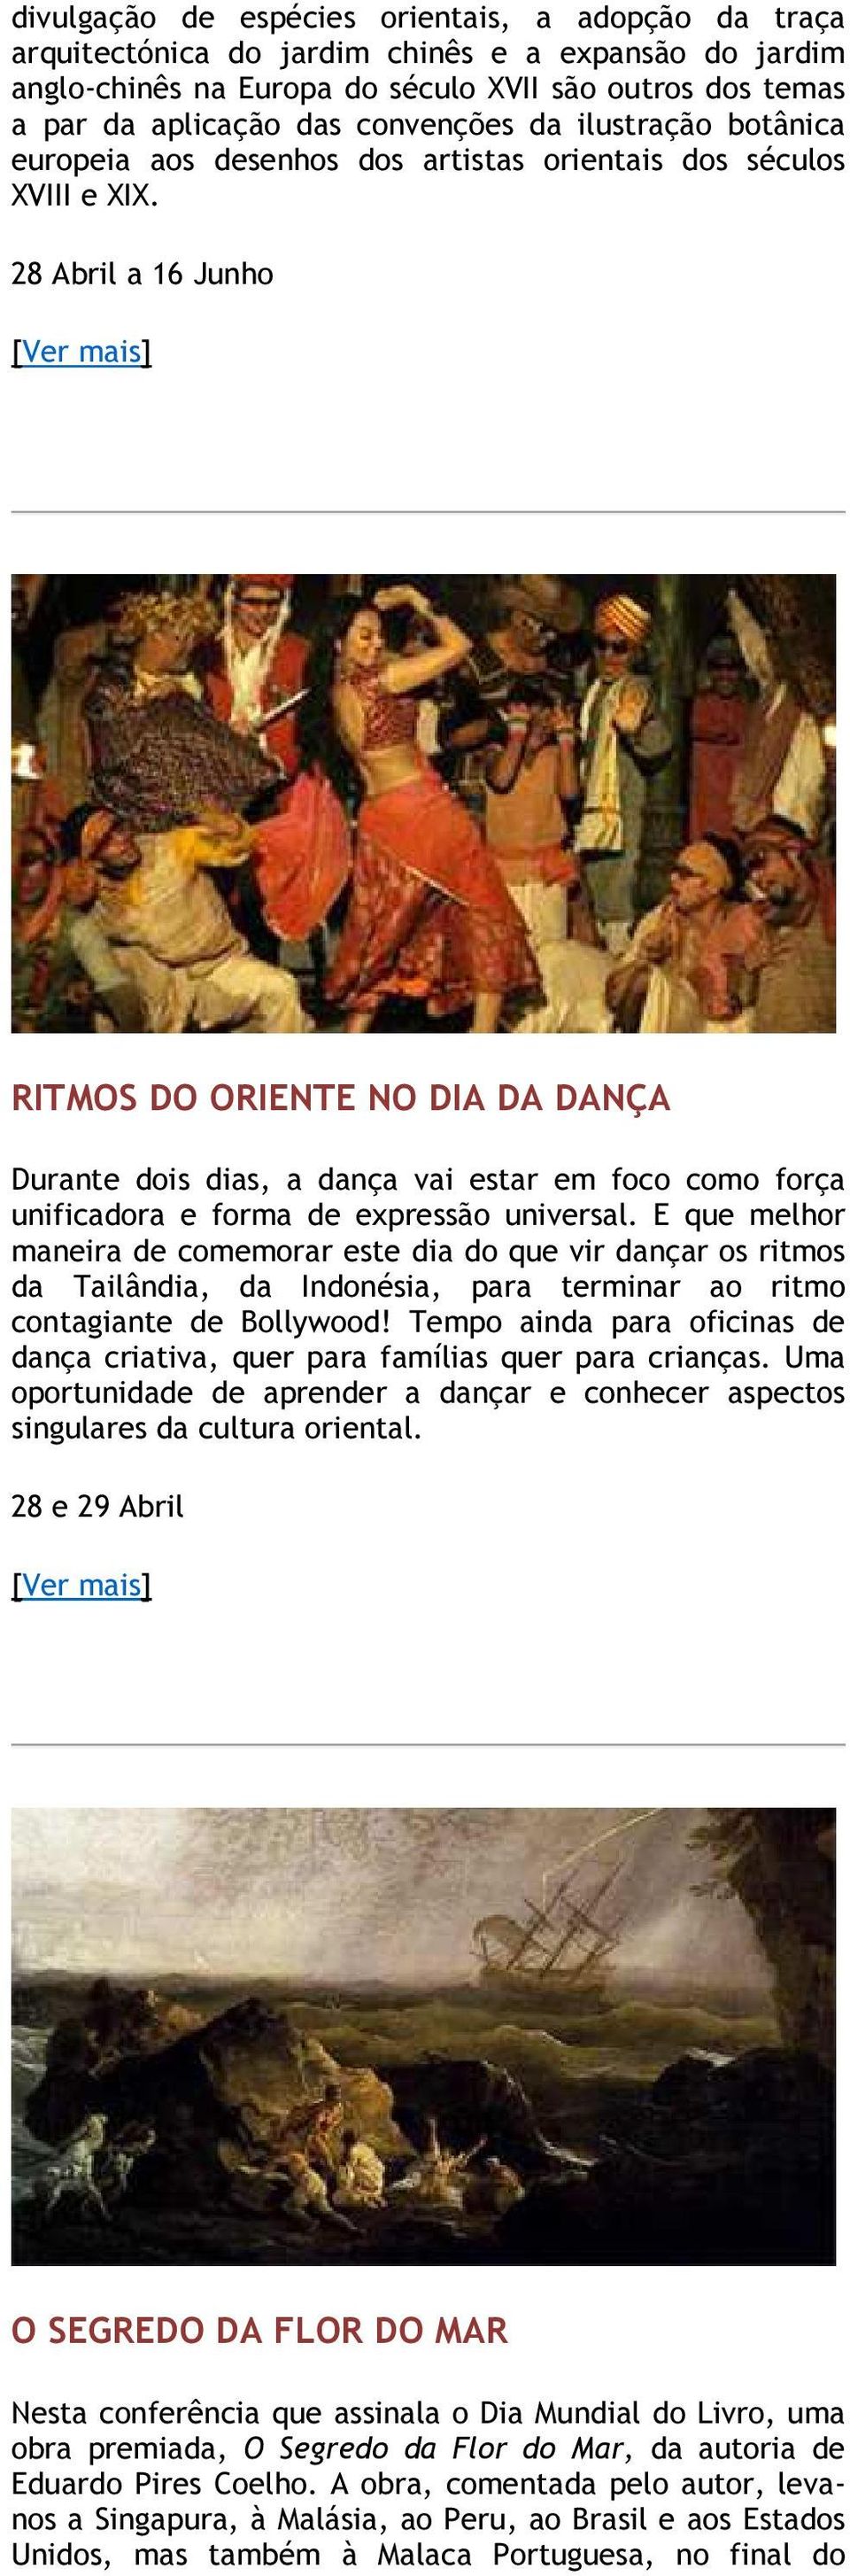 28 Abril a 16 Junho RITMOS DO ORIENTE NO DIA DA DANÇA Durante dois dias, a dança vai estar em foco como força unificadora e forma de expressão universal.